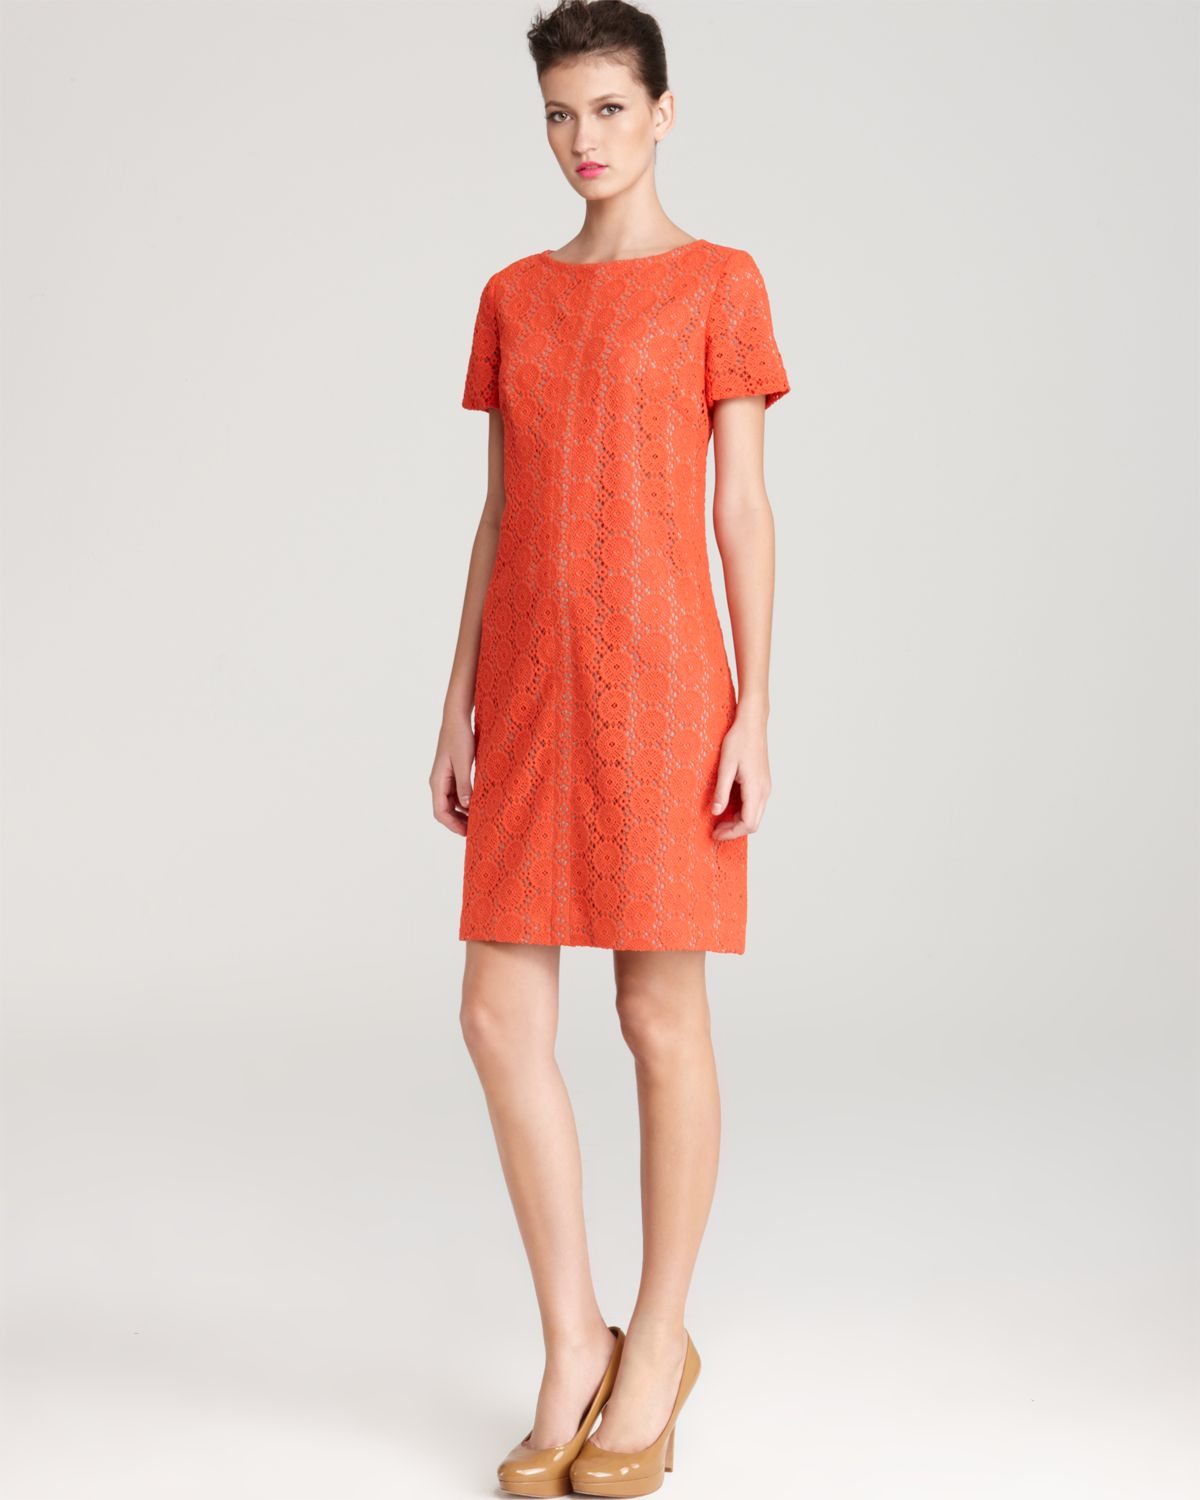 Anne klein Dress Short Sleeve Lace Shift Dress in Orange | Lyst